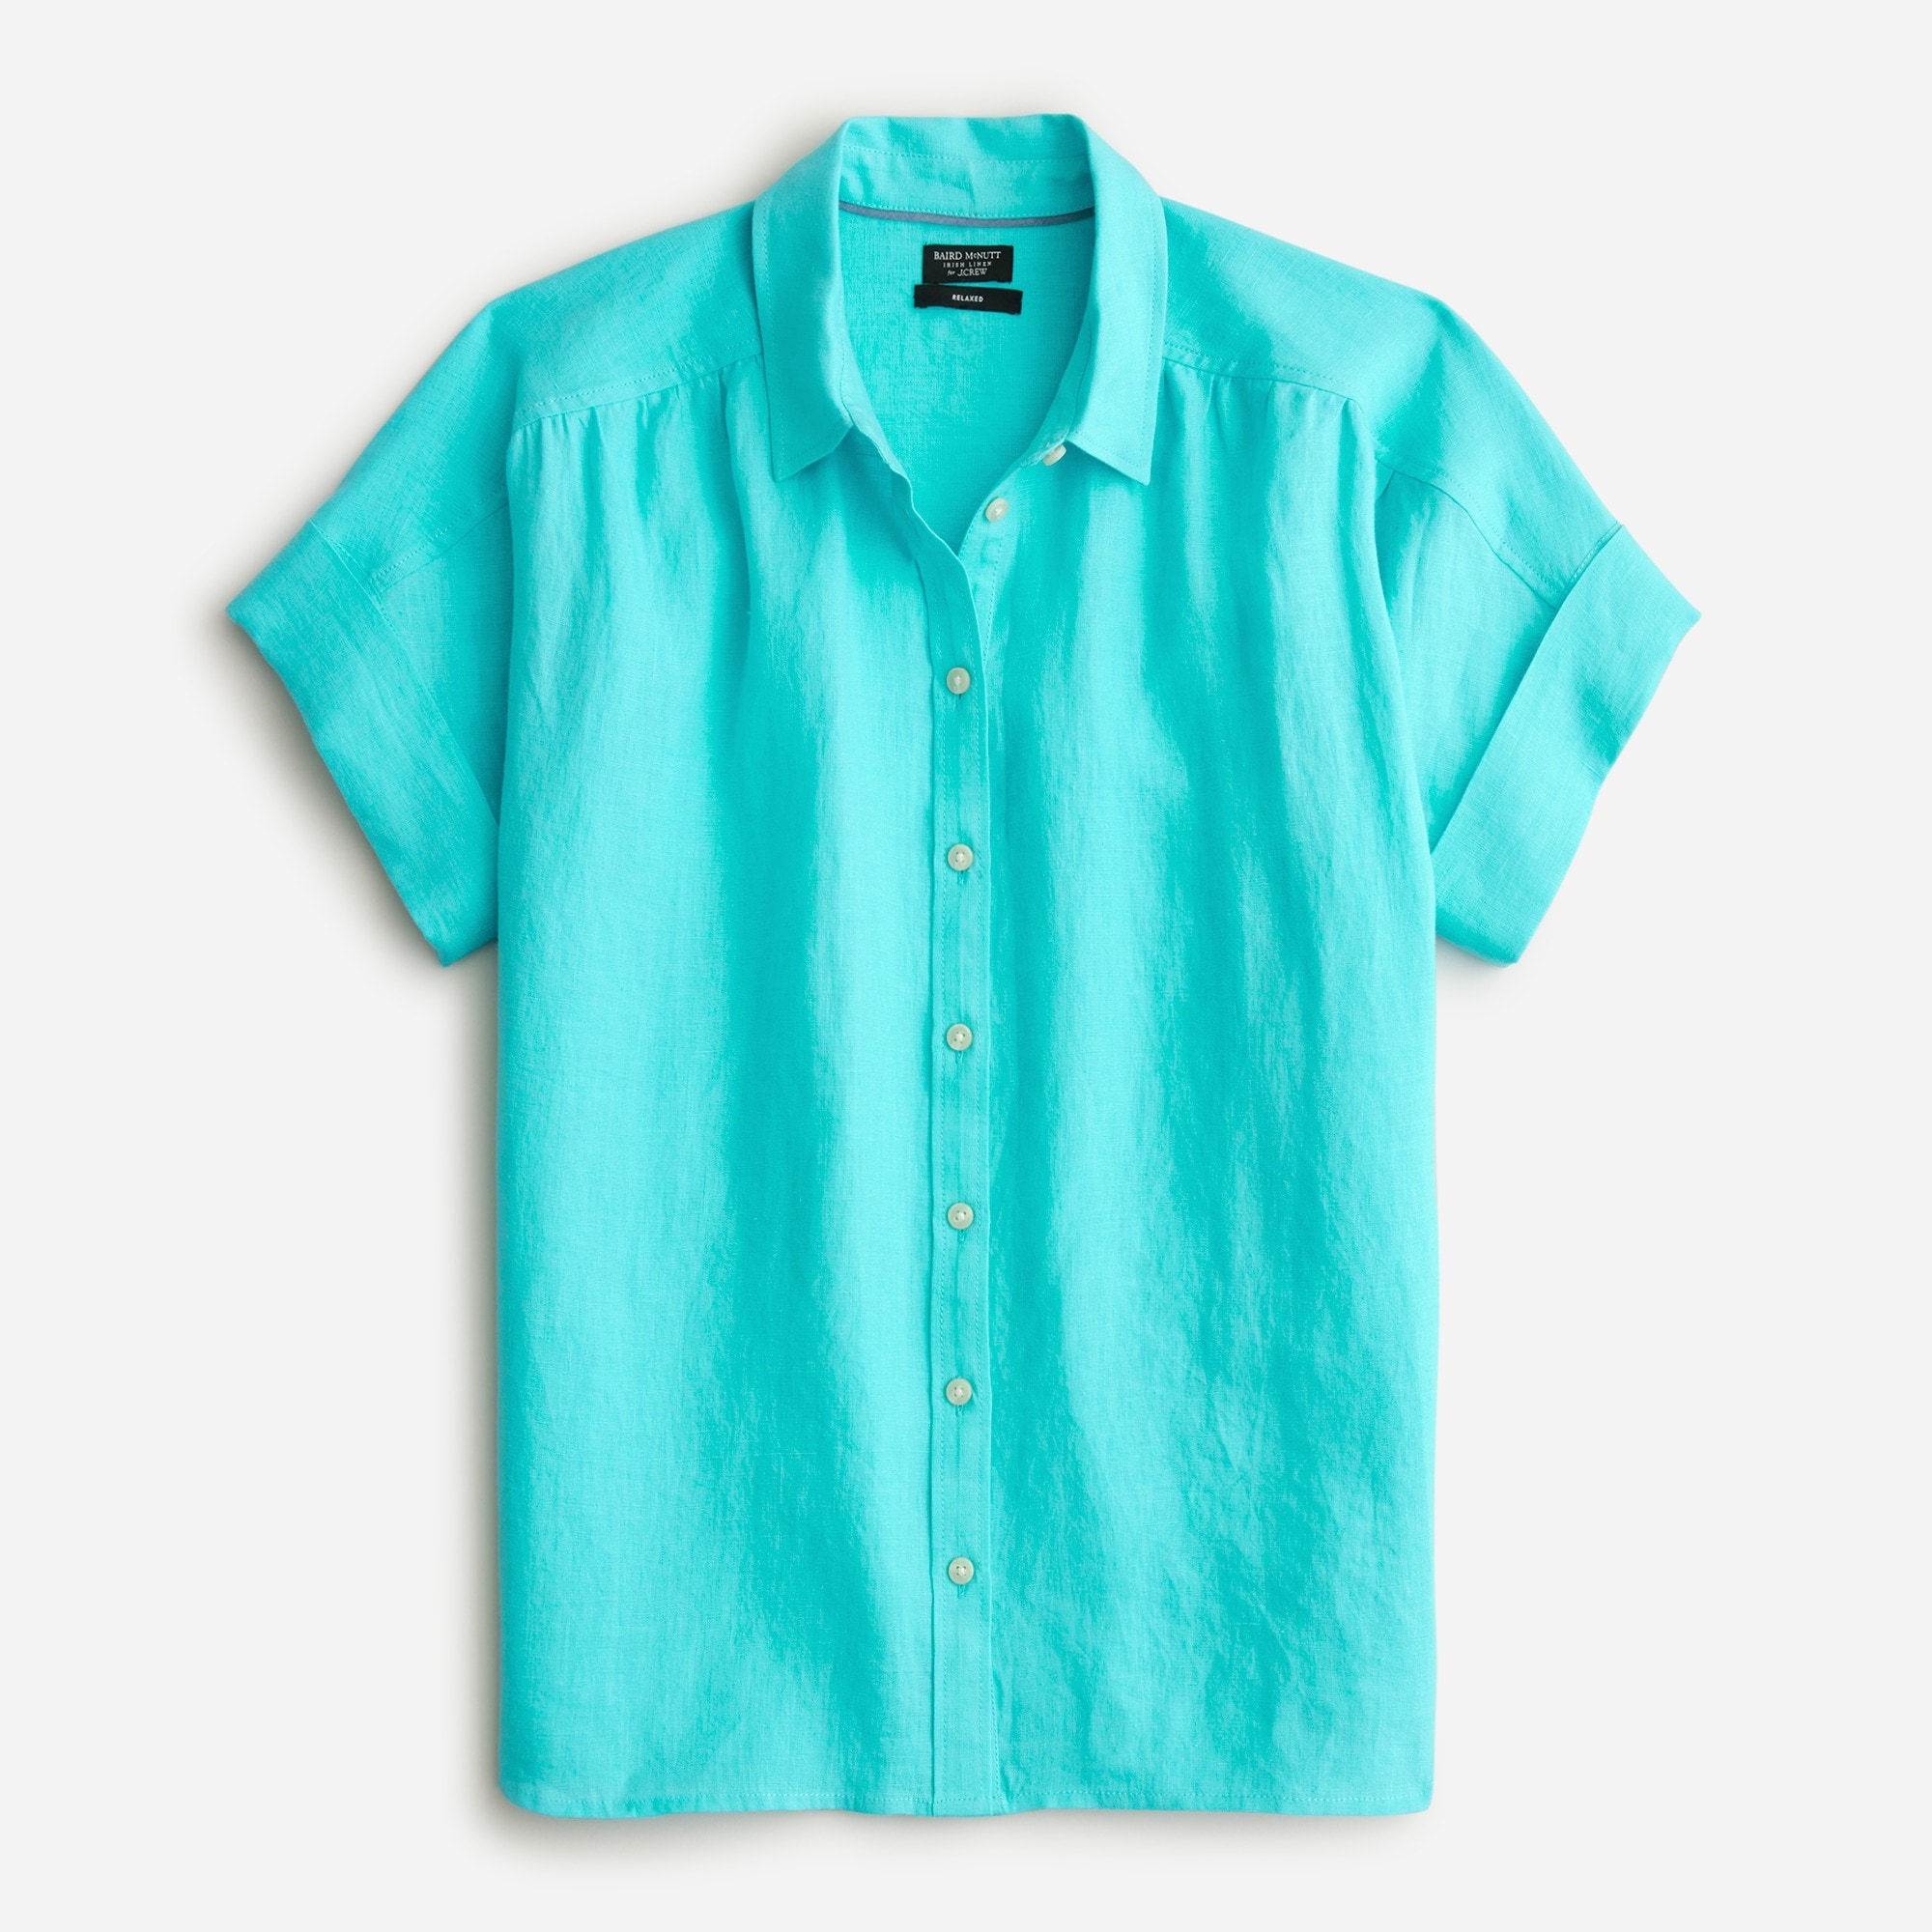 J.Crew: Relaxed-fit Short-sleeve Baird McNutt Irish Linen Shirt For Women